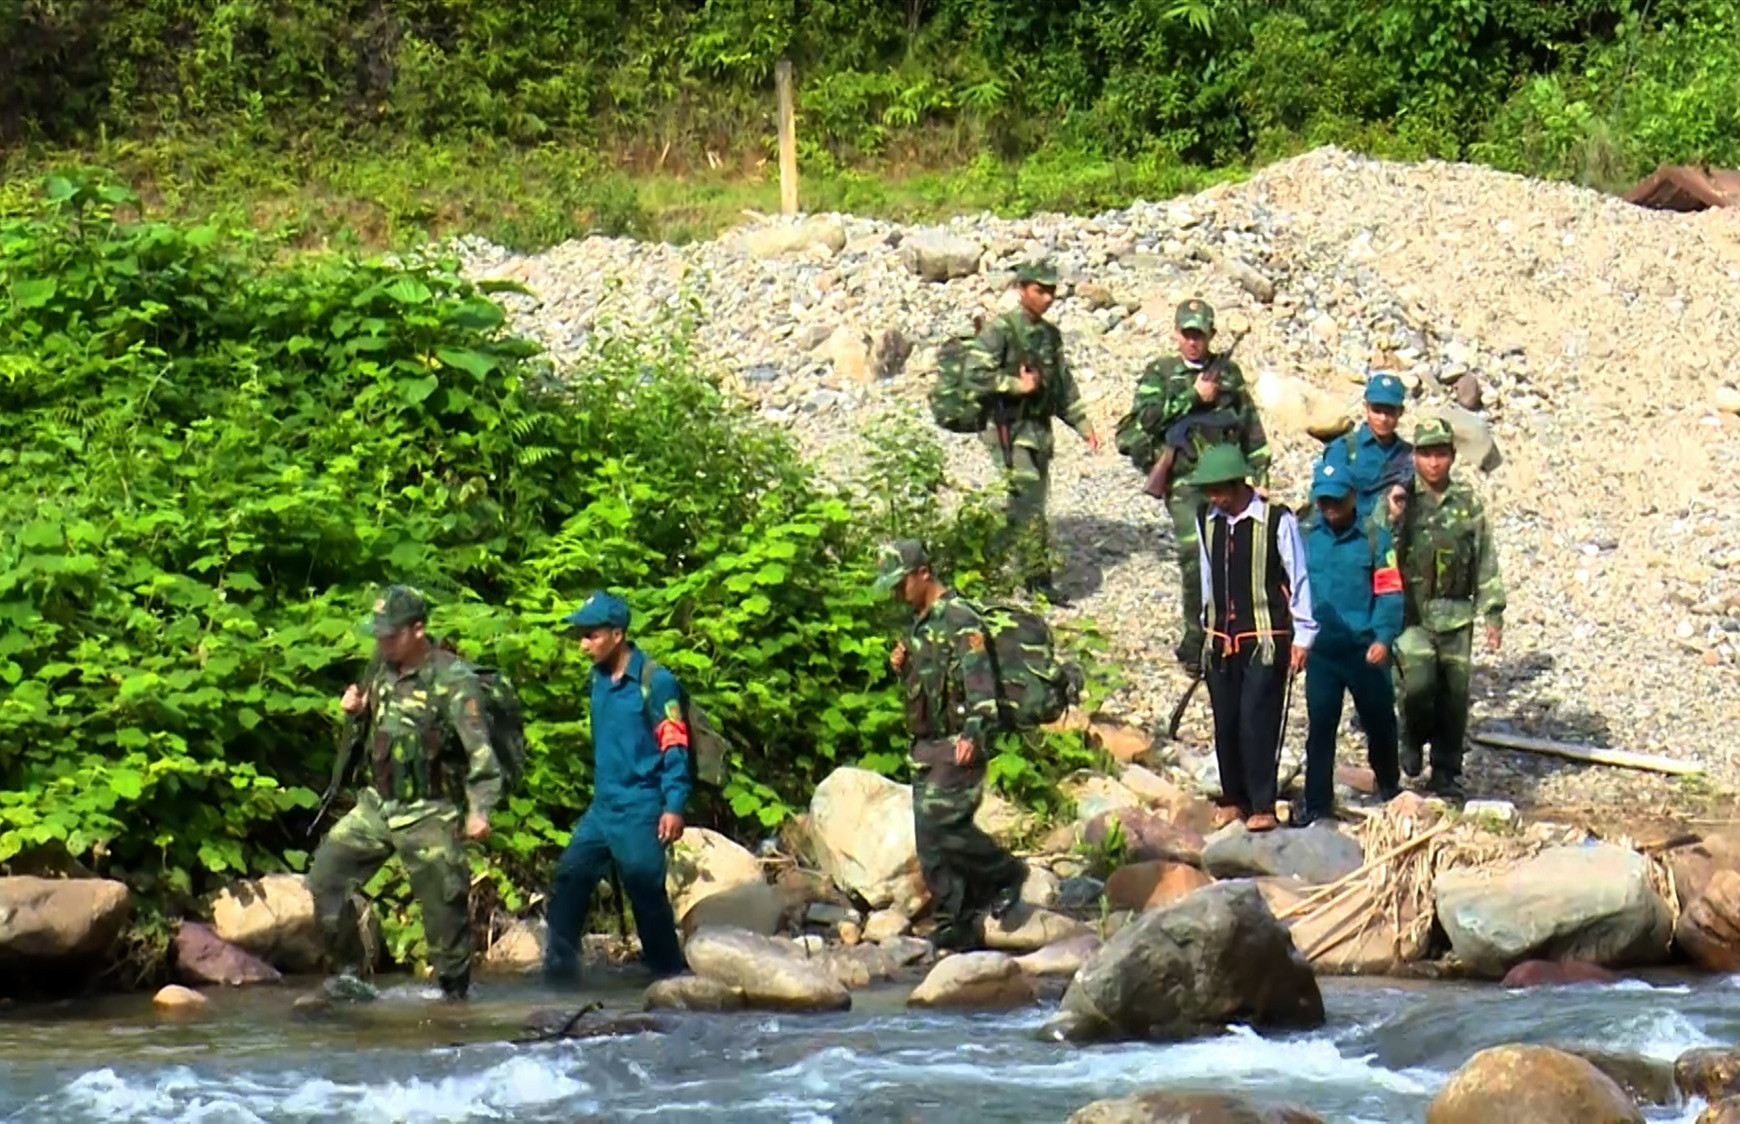 Cán bộ chiến sĩ ĐBPCK Nam Giang cùng lực lượng dân quân và người dân địa phương thường xuyên thực hiện công tác tuần tra biên giới, đảm bảo chủ quyền lãnh thổ quốc gia. Ảnh: Q.Đ